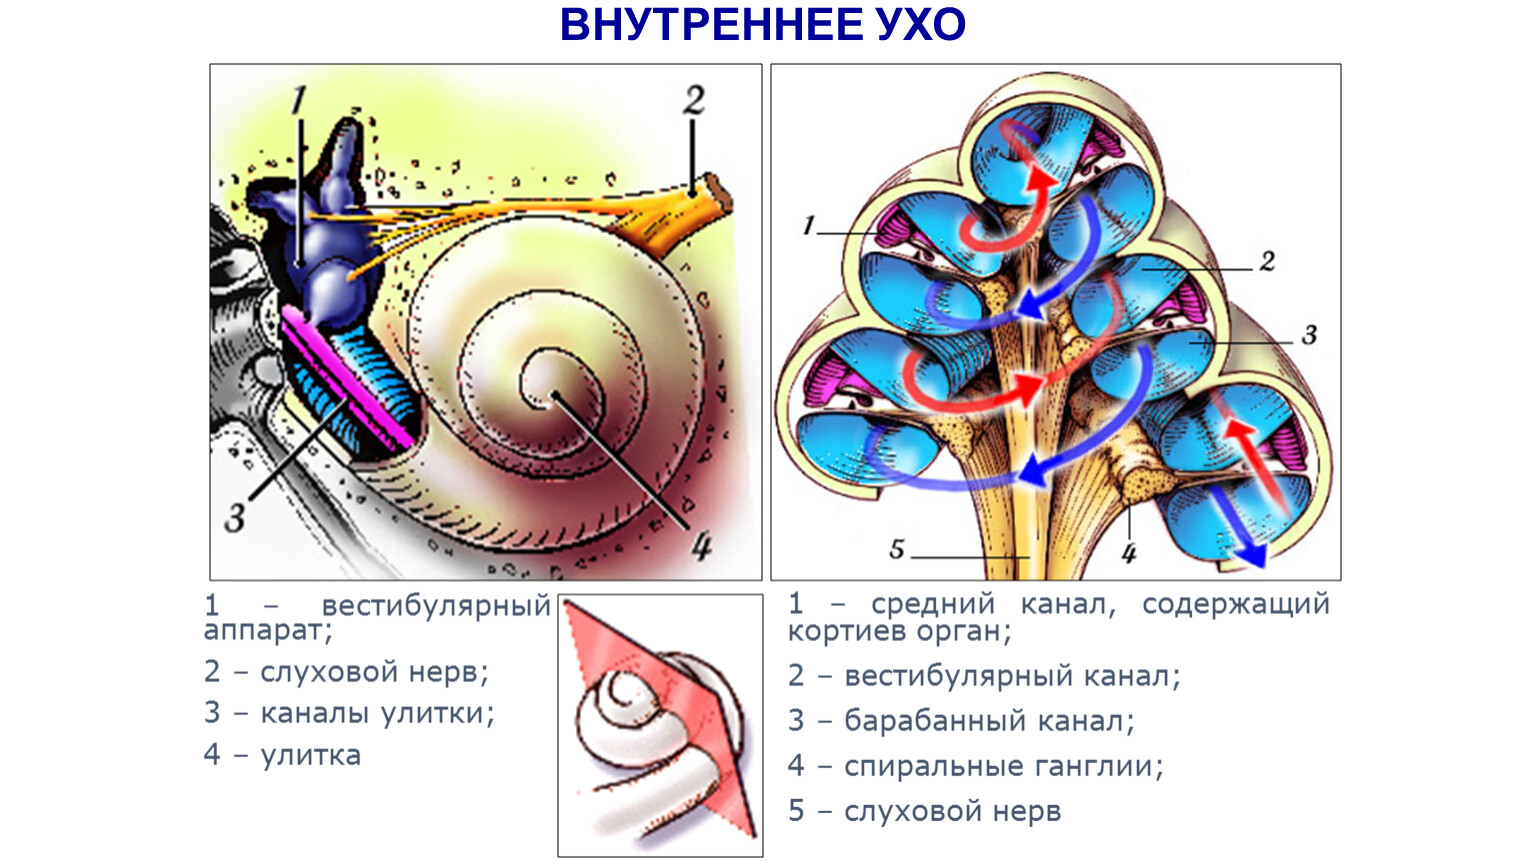 Улитка выполняет функцию. Внутреннее ухо строение анатомия строение улитки. Строение улитки внутреннего уха. Строение улитки внутреннего уха анатомия. Внутреннее строение улитки внутреннего уха.